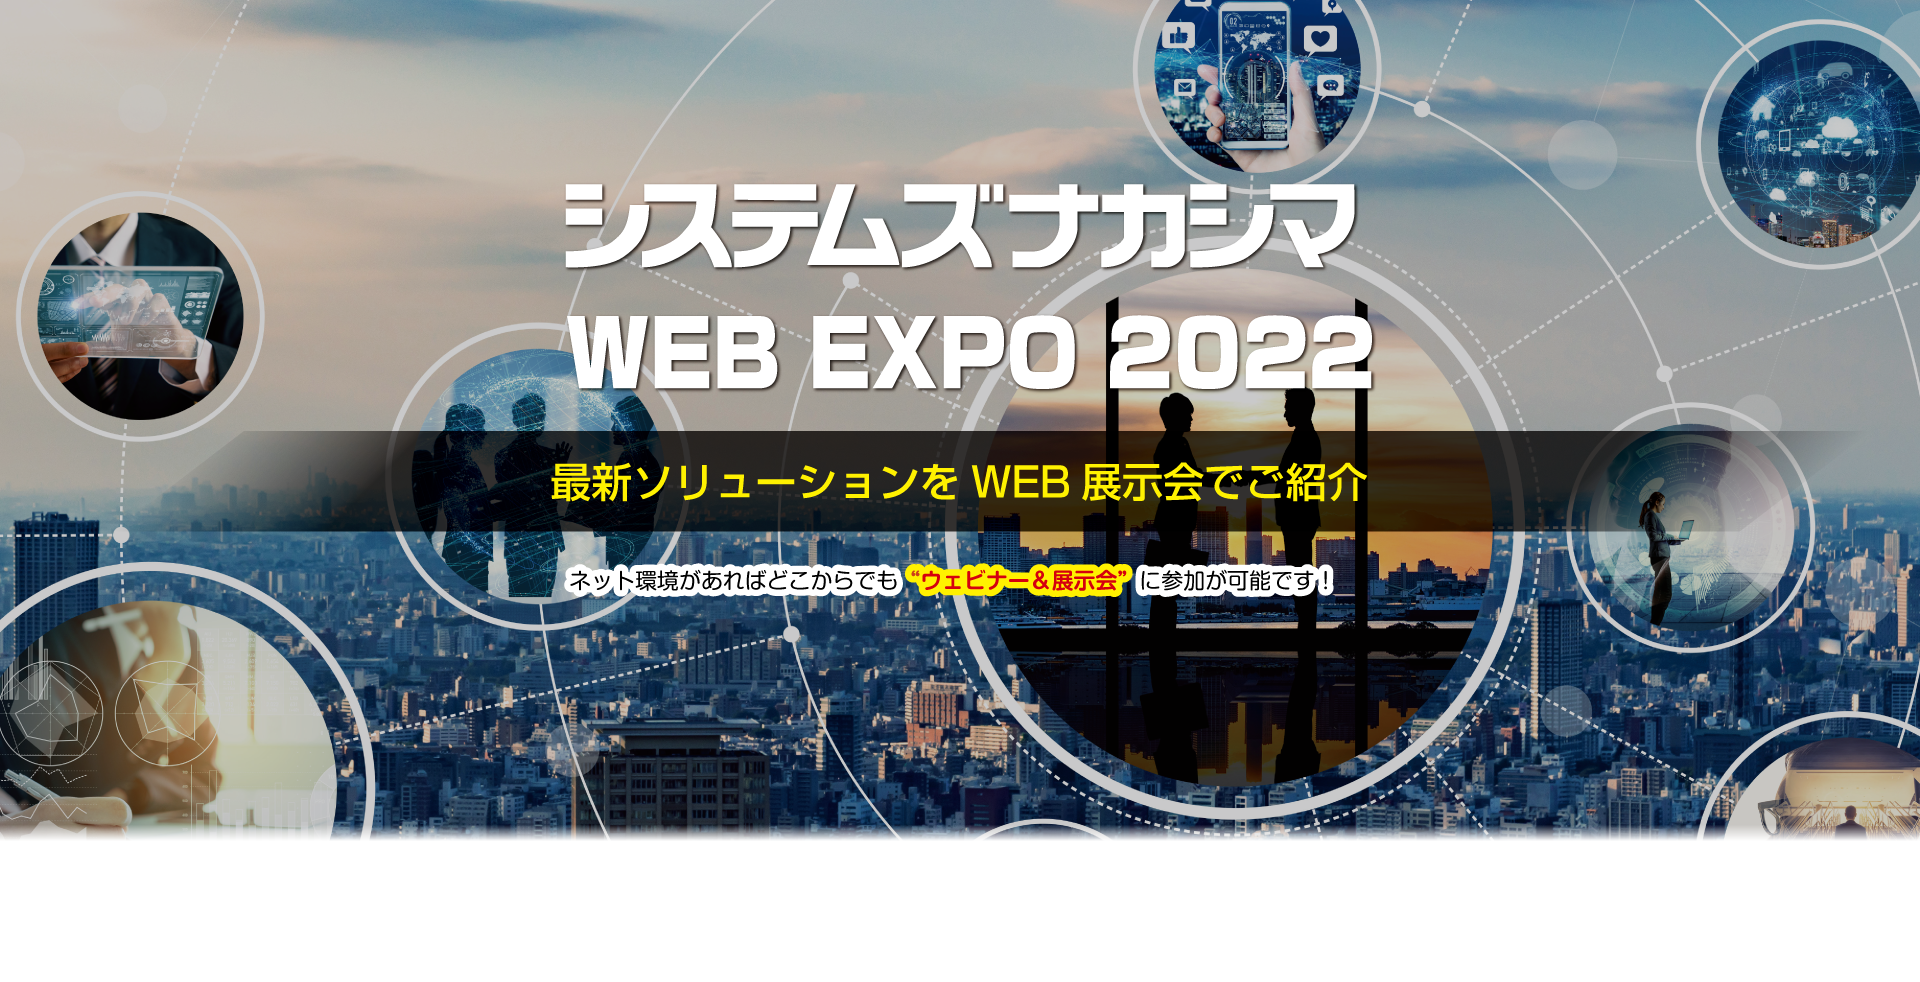 システムズナカシマ WEB EXPO 2022